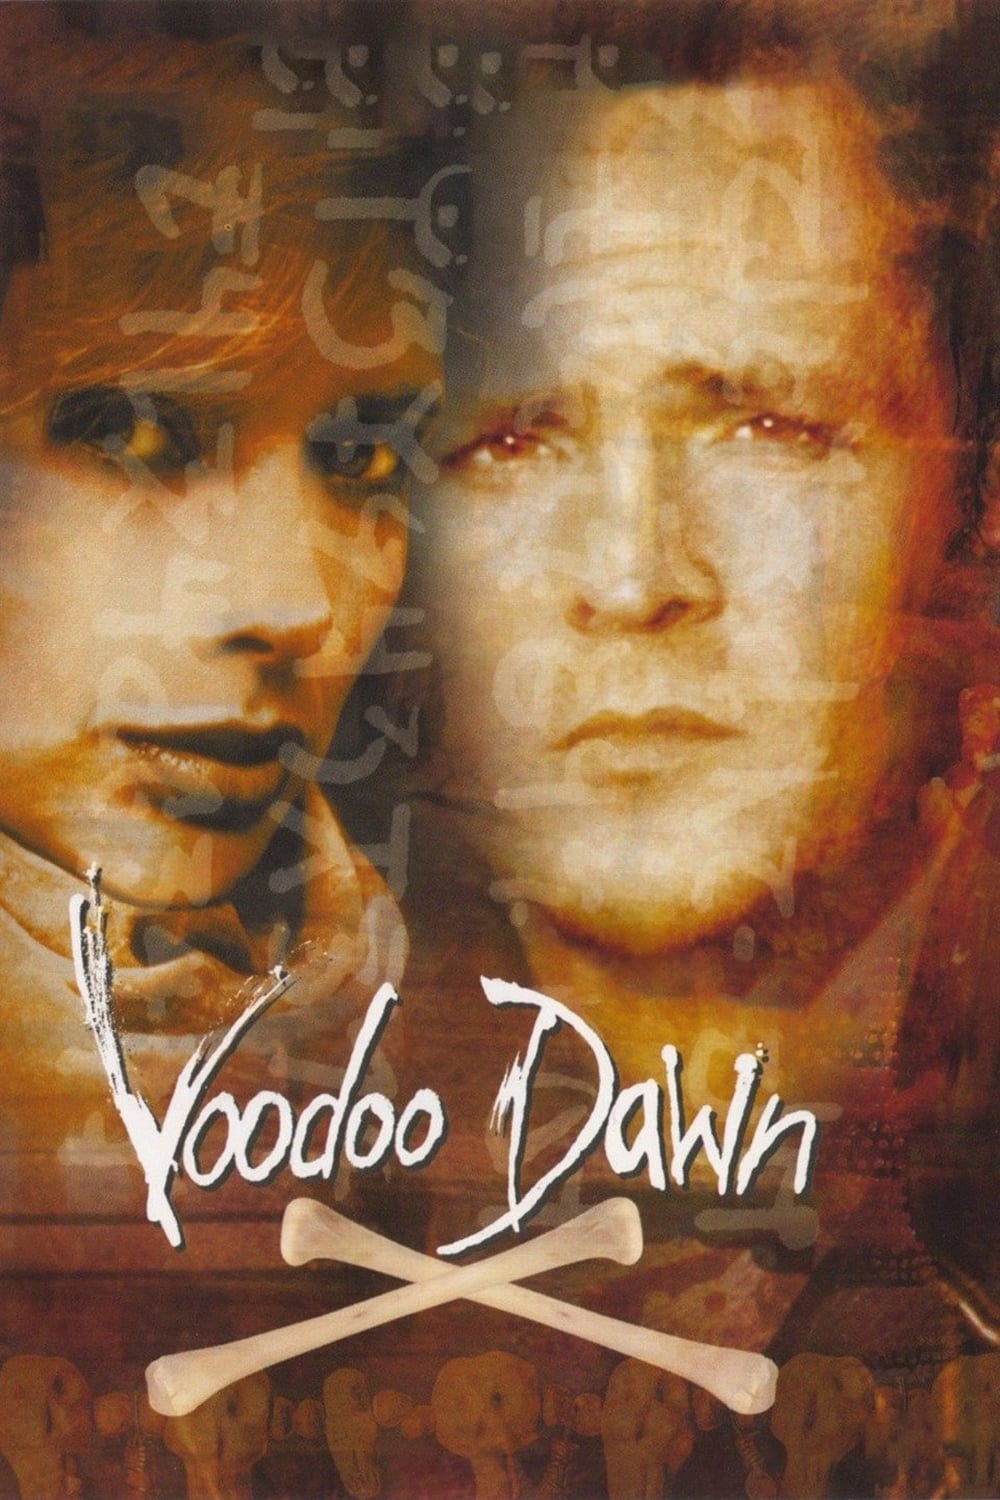 Voodoo Dawn (2000)